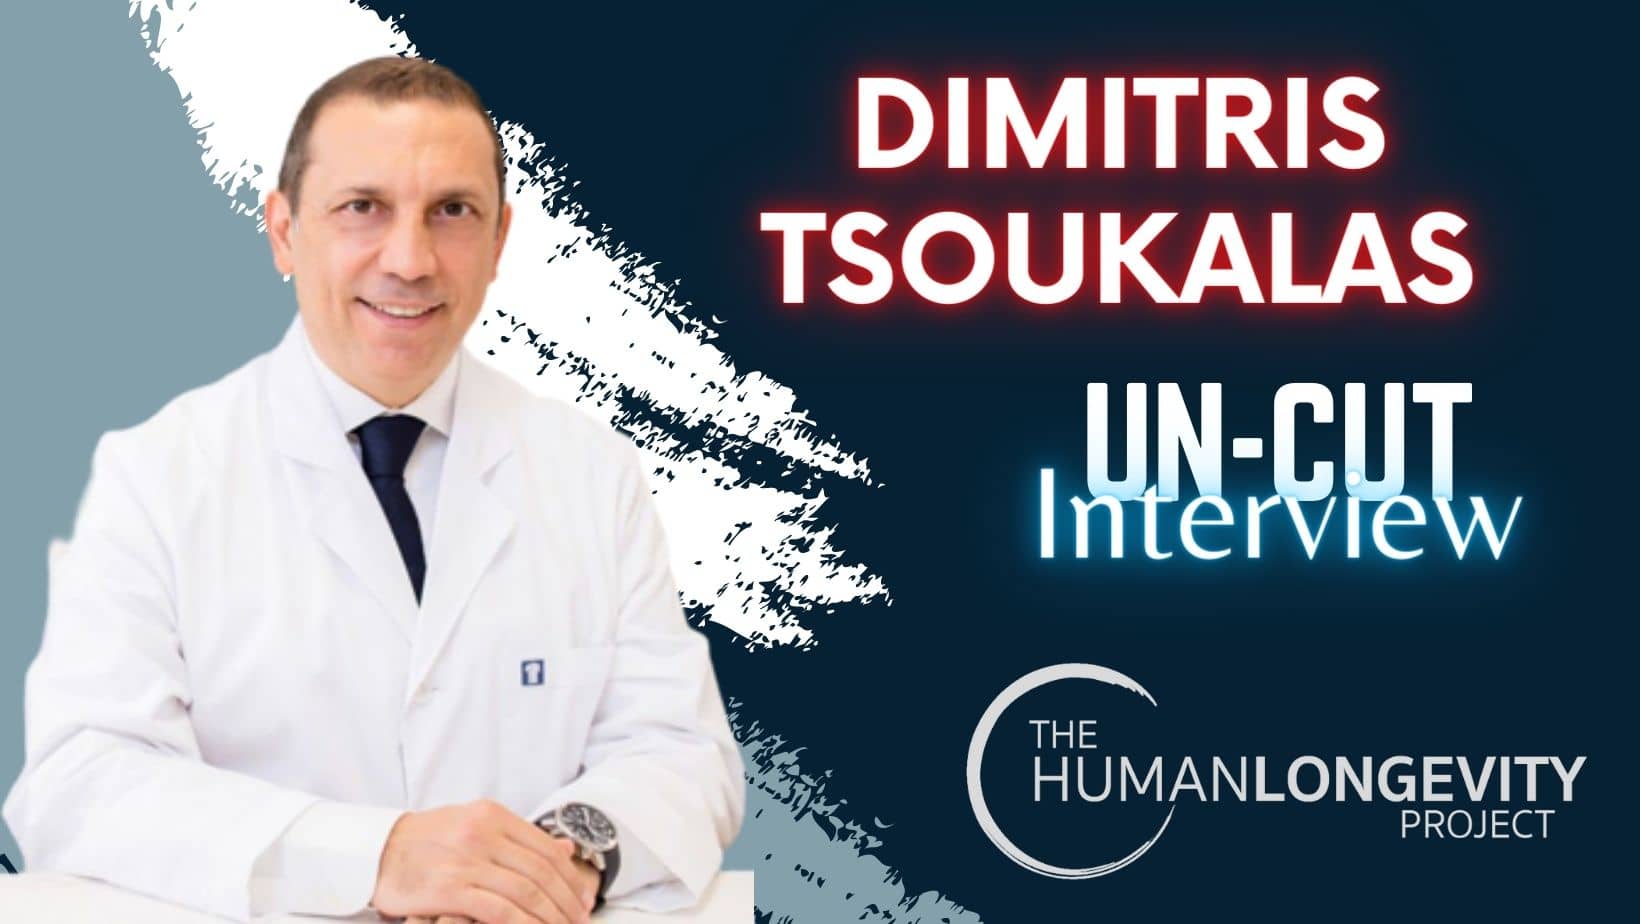 Human Longevity Project Uncut Interview With Dr. Dimitris Tsoukalas